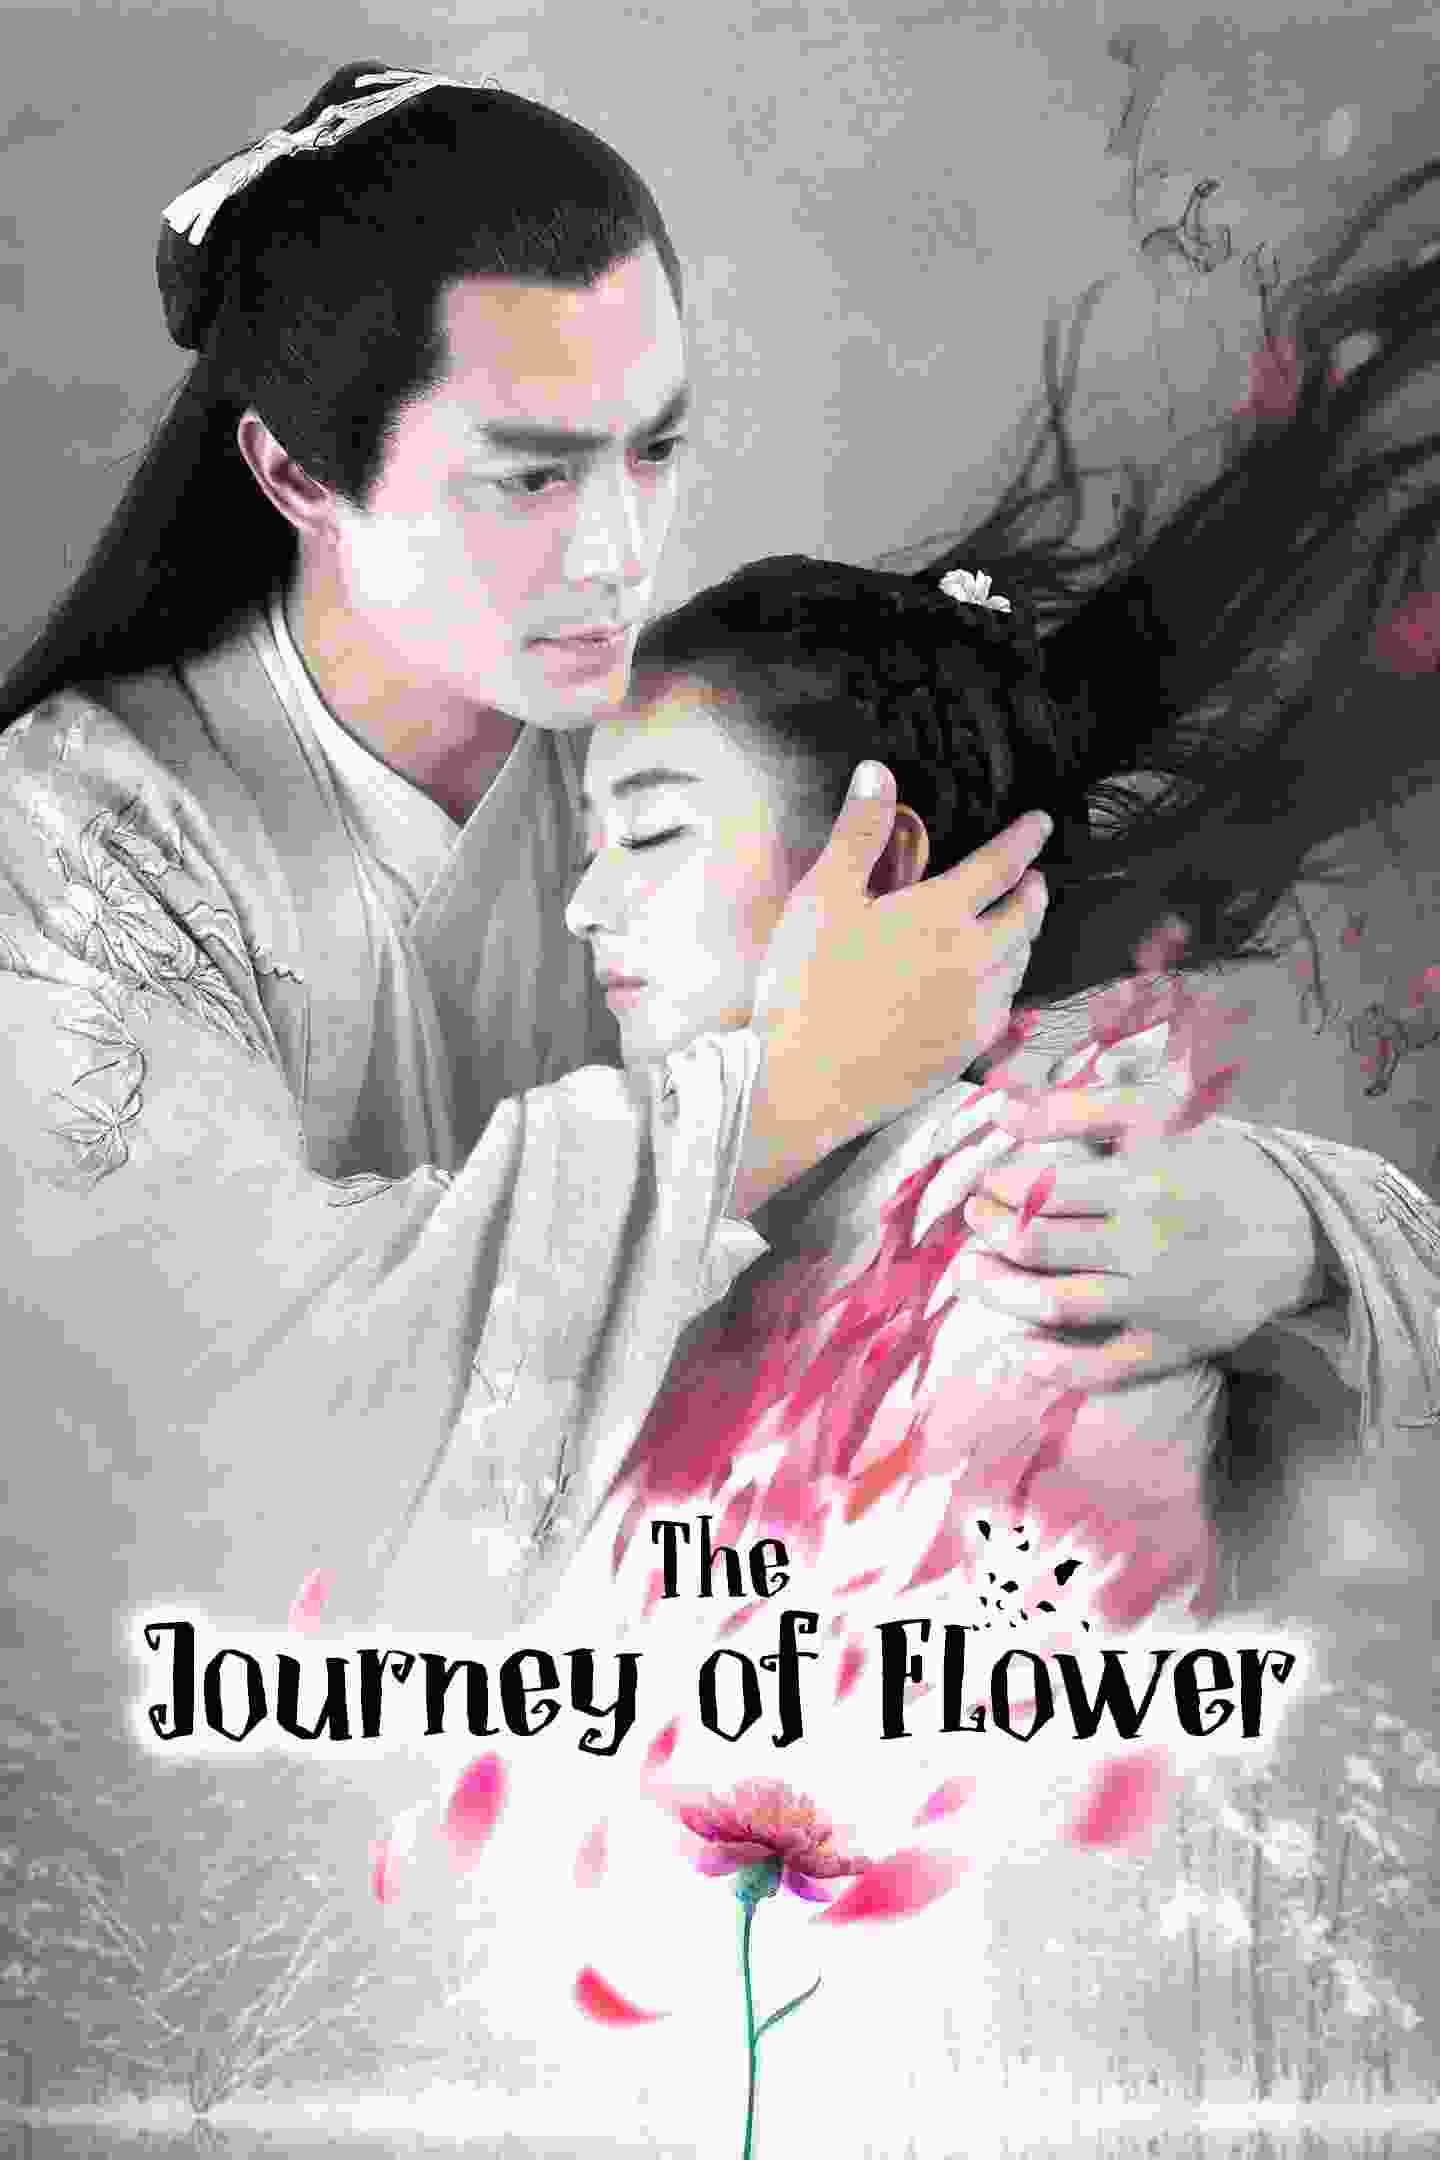 The Journey of Flower (TV Series 2015– ) vj mukiibi Zanilia Zhao